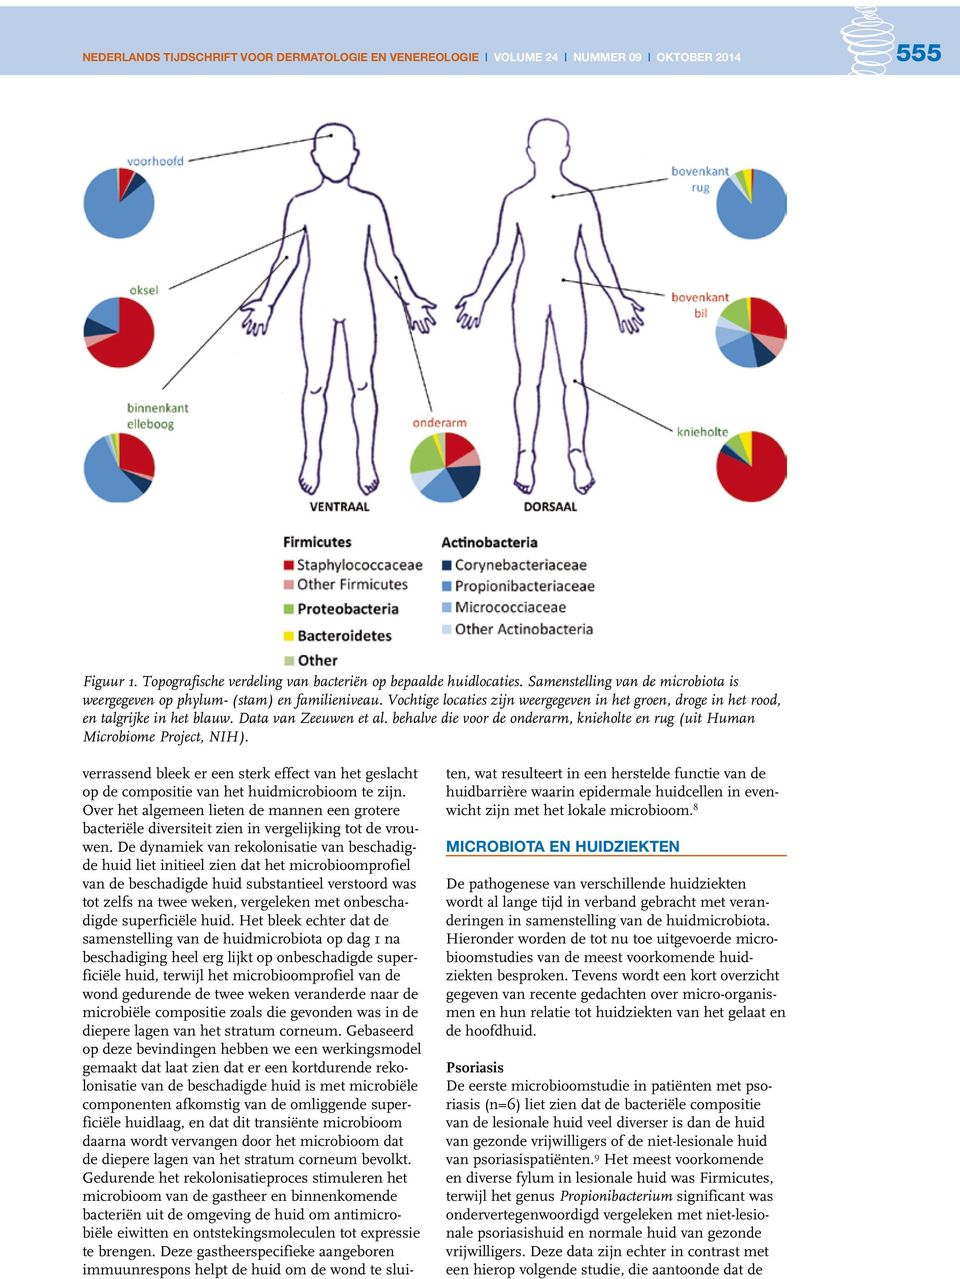 Data van Zeeuwen et al. behalve die voor de onderarm, knieholte en rug (uit Human Microbiome Project, NIH).